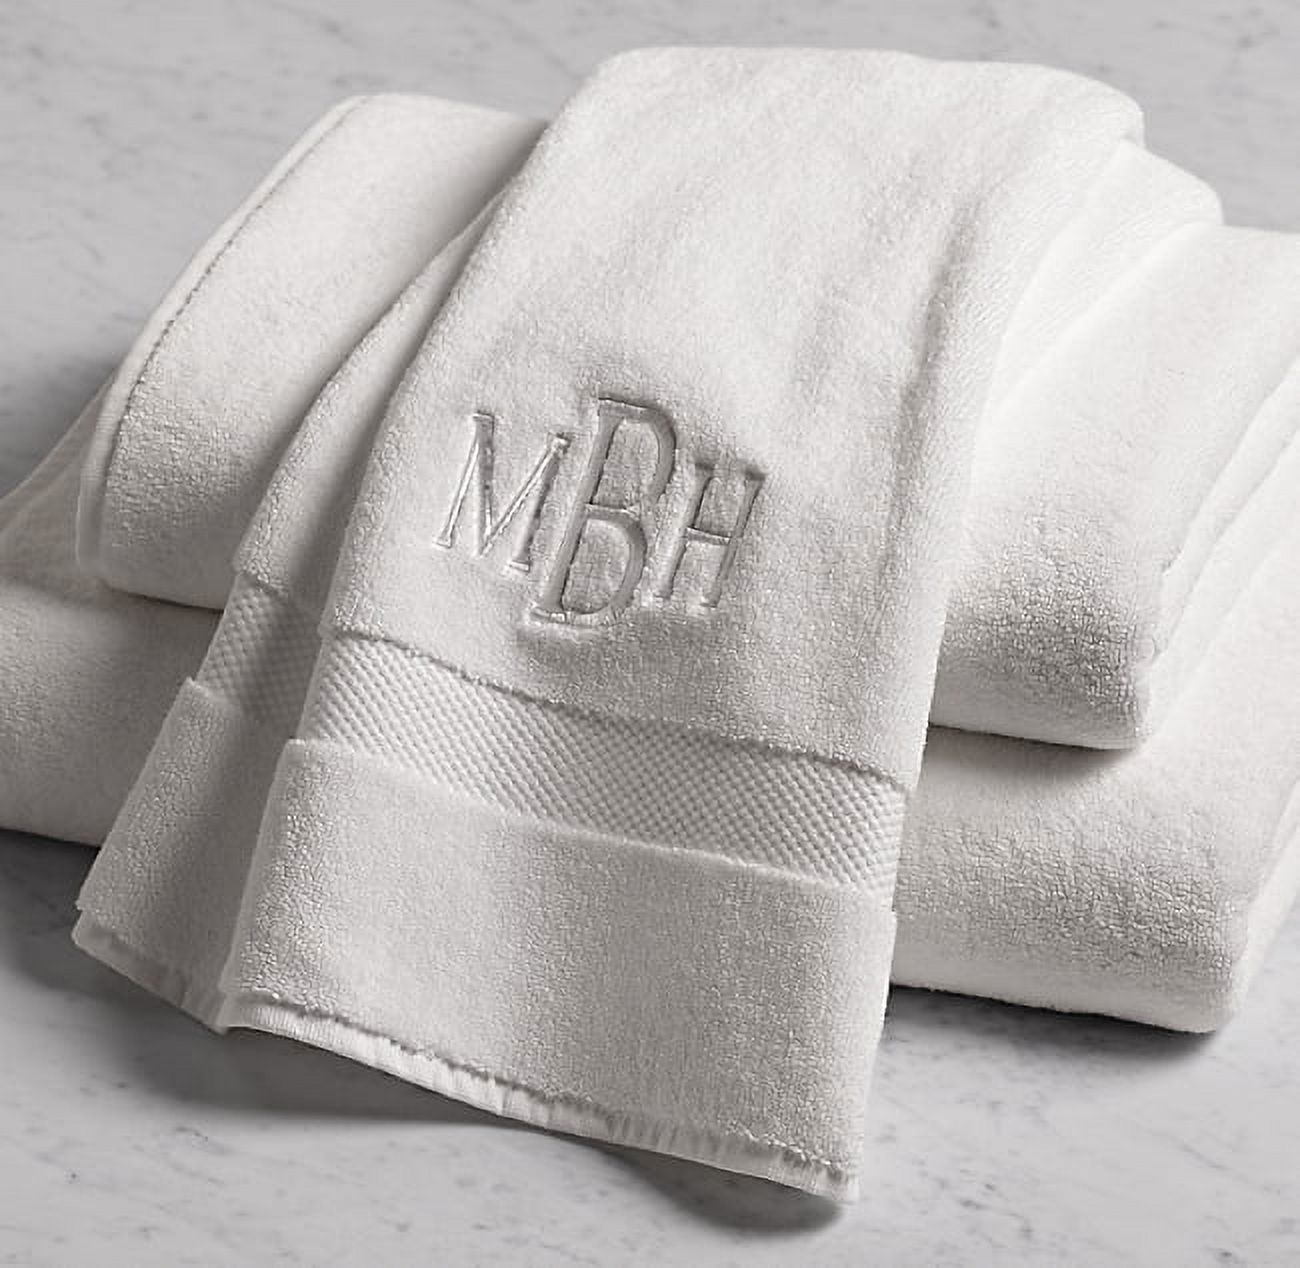 100-percent Plush Cotton 24-piece Economic Bath Towel set - image 1 of 4